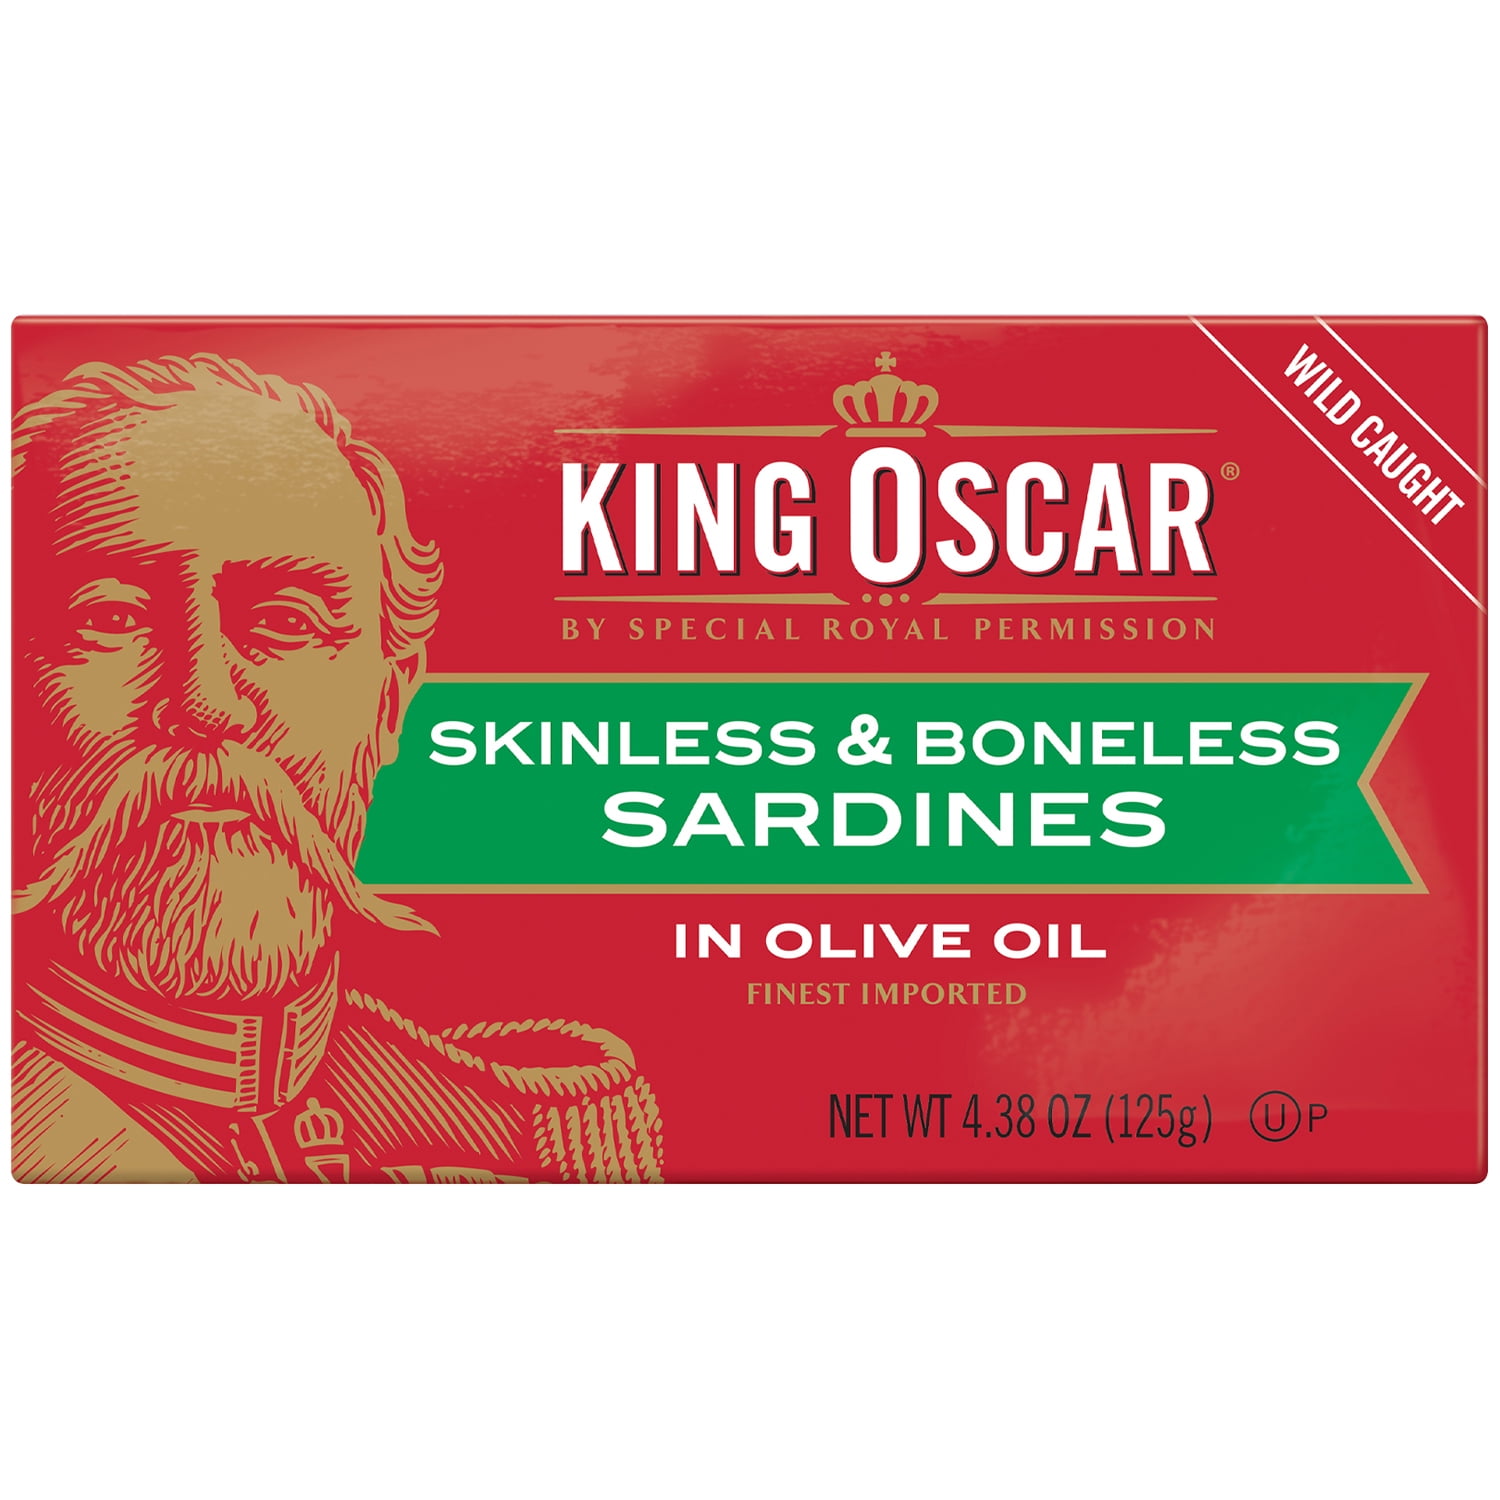 King Oscar Skinless & Boneless Sardines in Olive Oil, 4.38 Oz